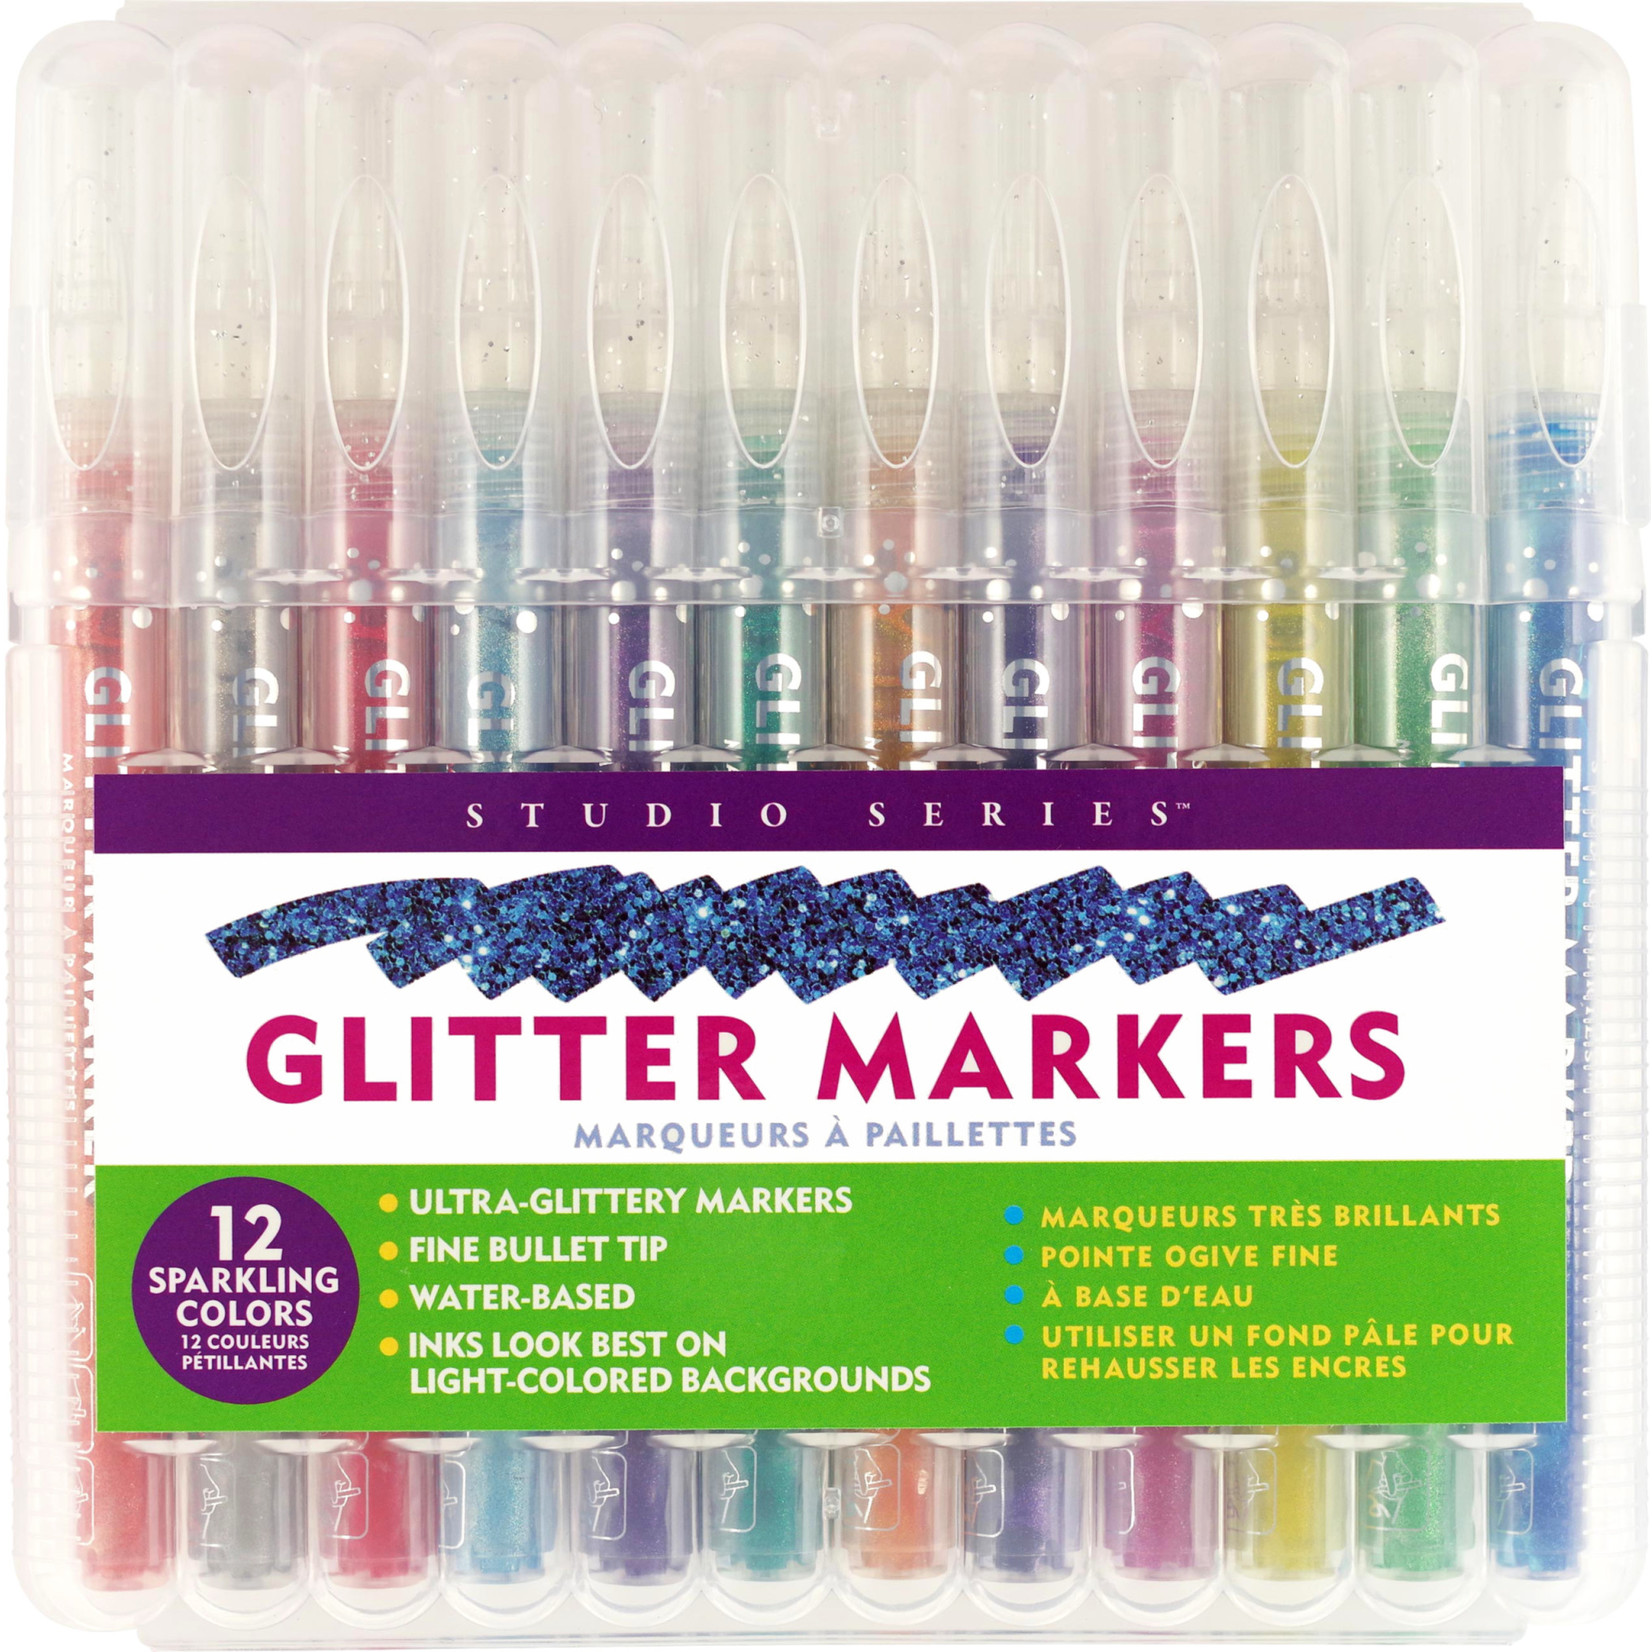 https://cdn.shoplightspeed.com/shops/657021/files/43415231/1652x1652x2/studio-series-glitter-marker-set-12-piece-set.jpg